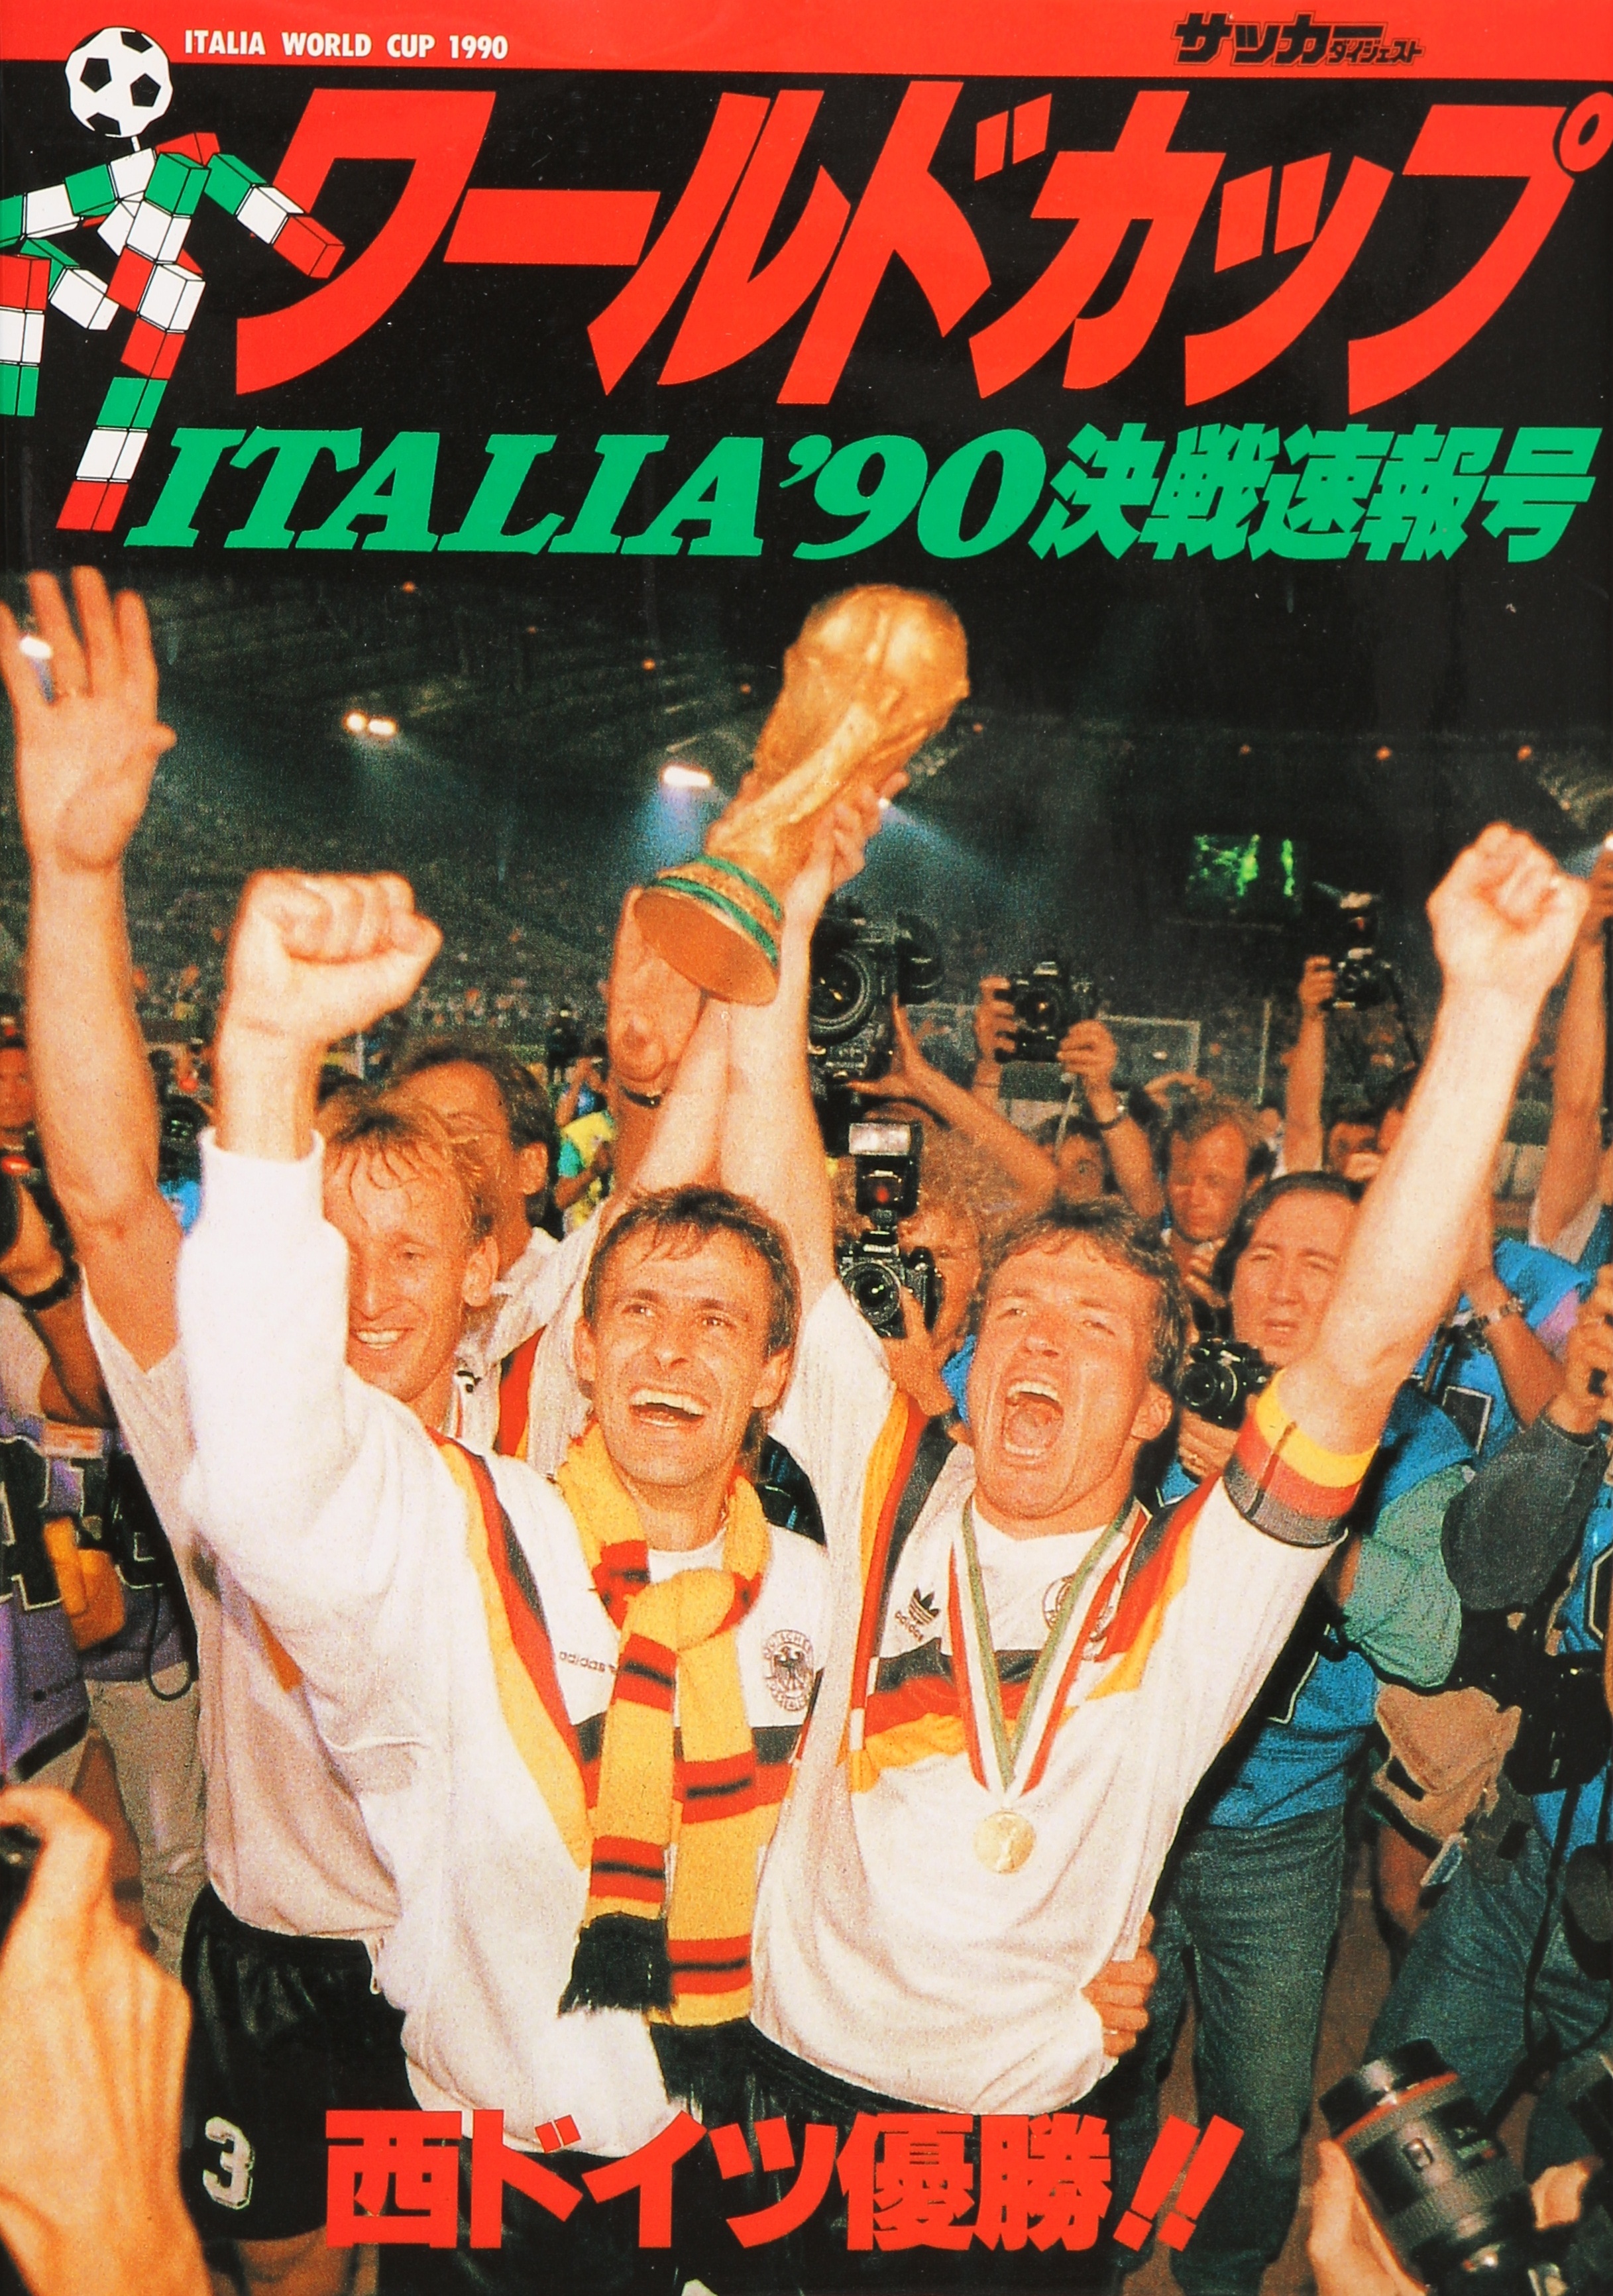 イタリア 90ワールドカップ決戦速報号 復刻版 日本スポーツ企画